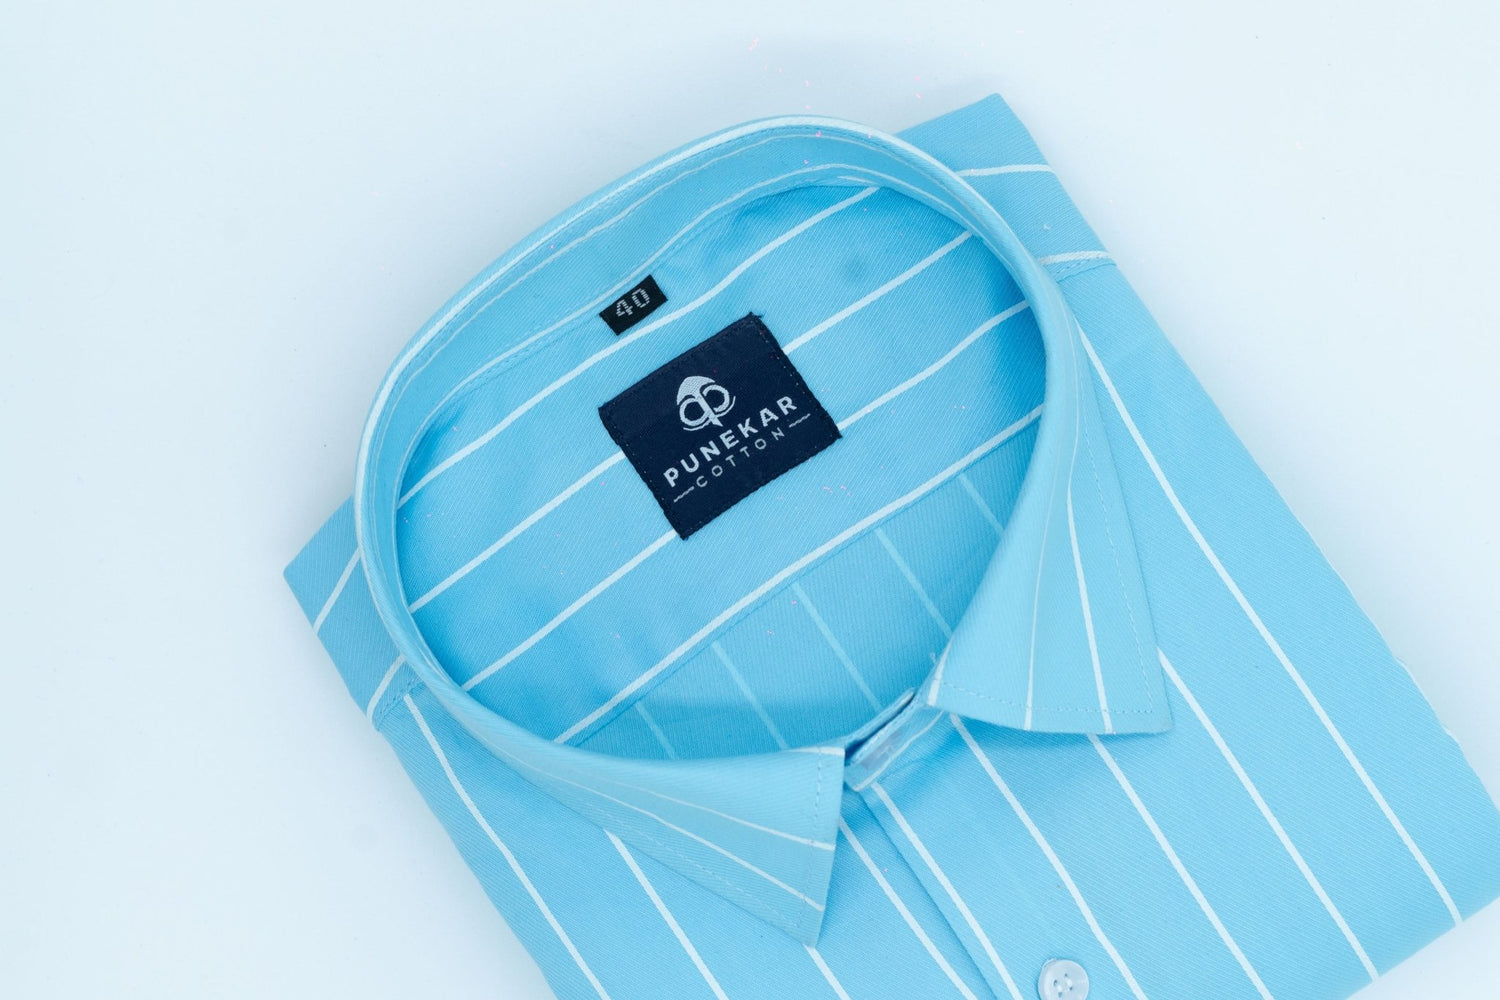 Sky Blue Color Pure Cotton Lining Shirt For Men - Punekar Cotton